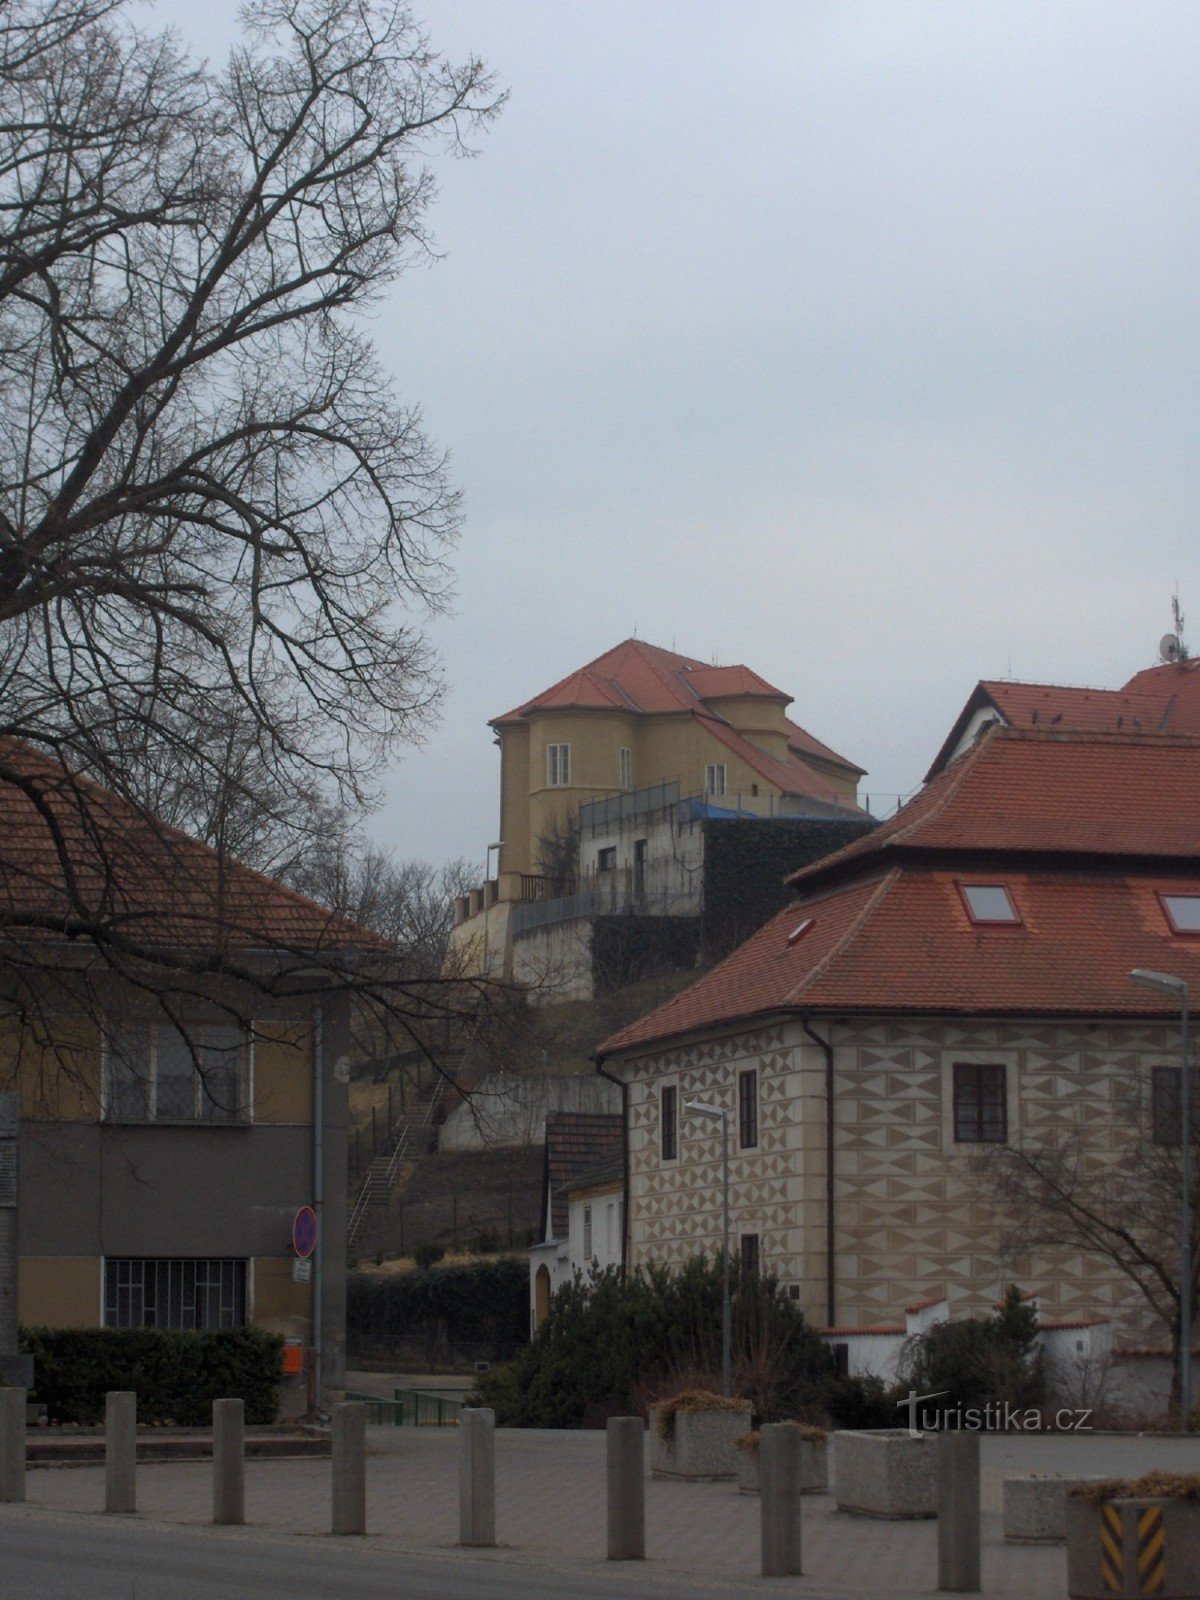 Castello Brozany